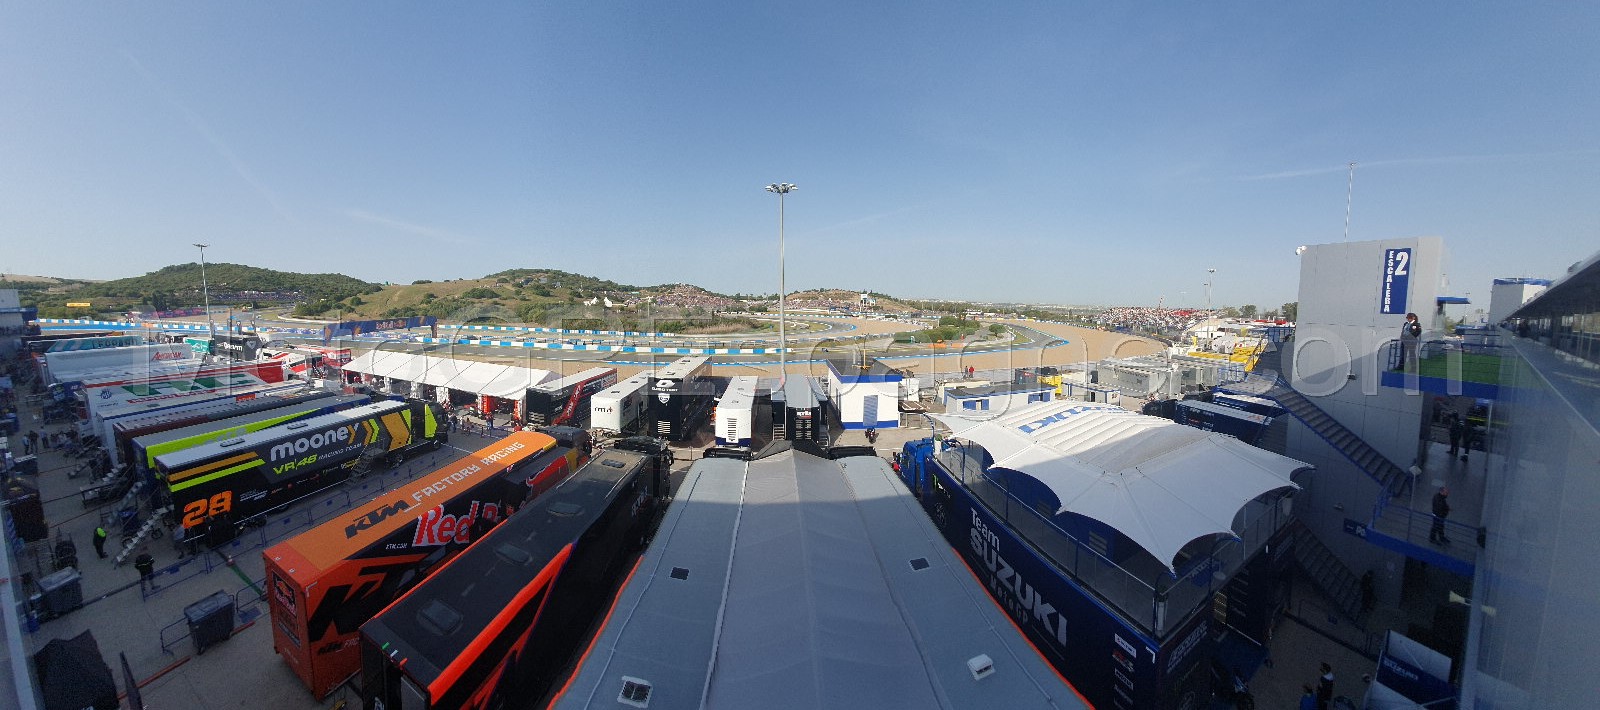 Espaces VIP avec une vue privilégiée sur le circuit Jerez-Angel Nieto